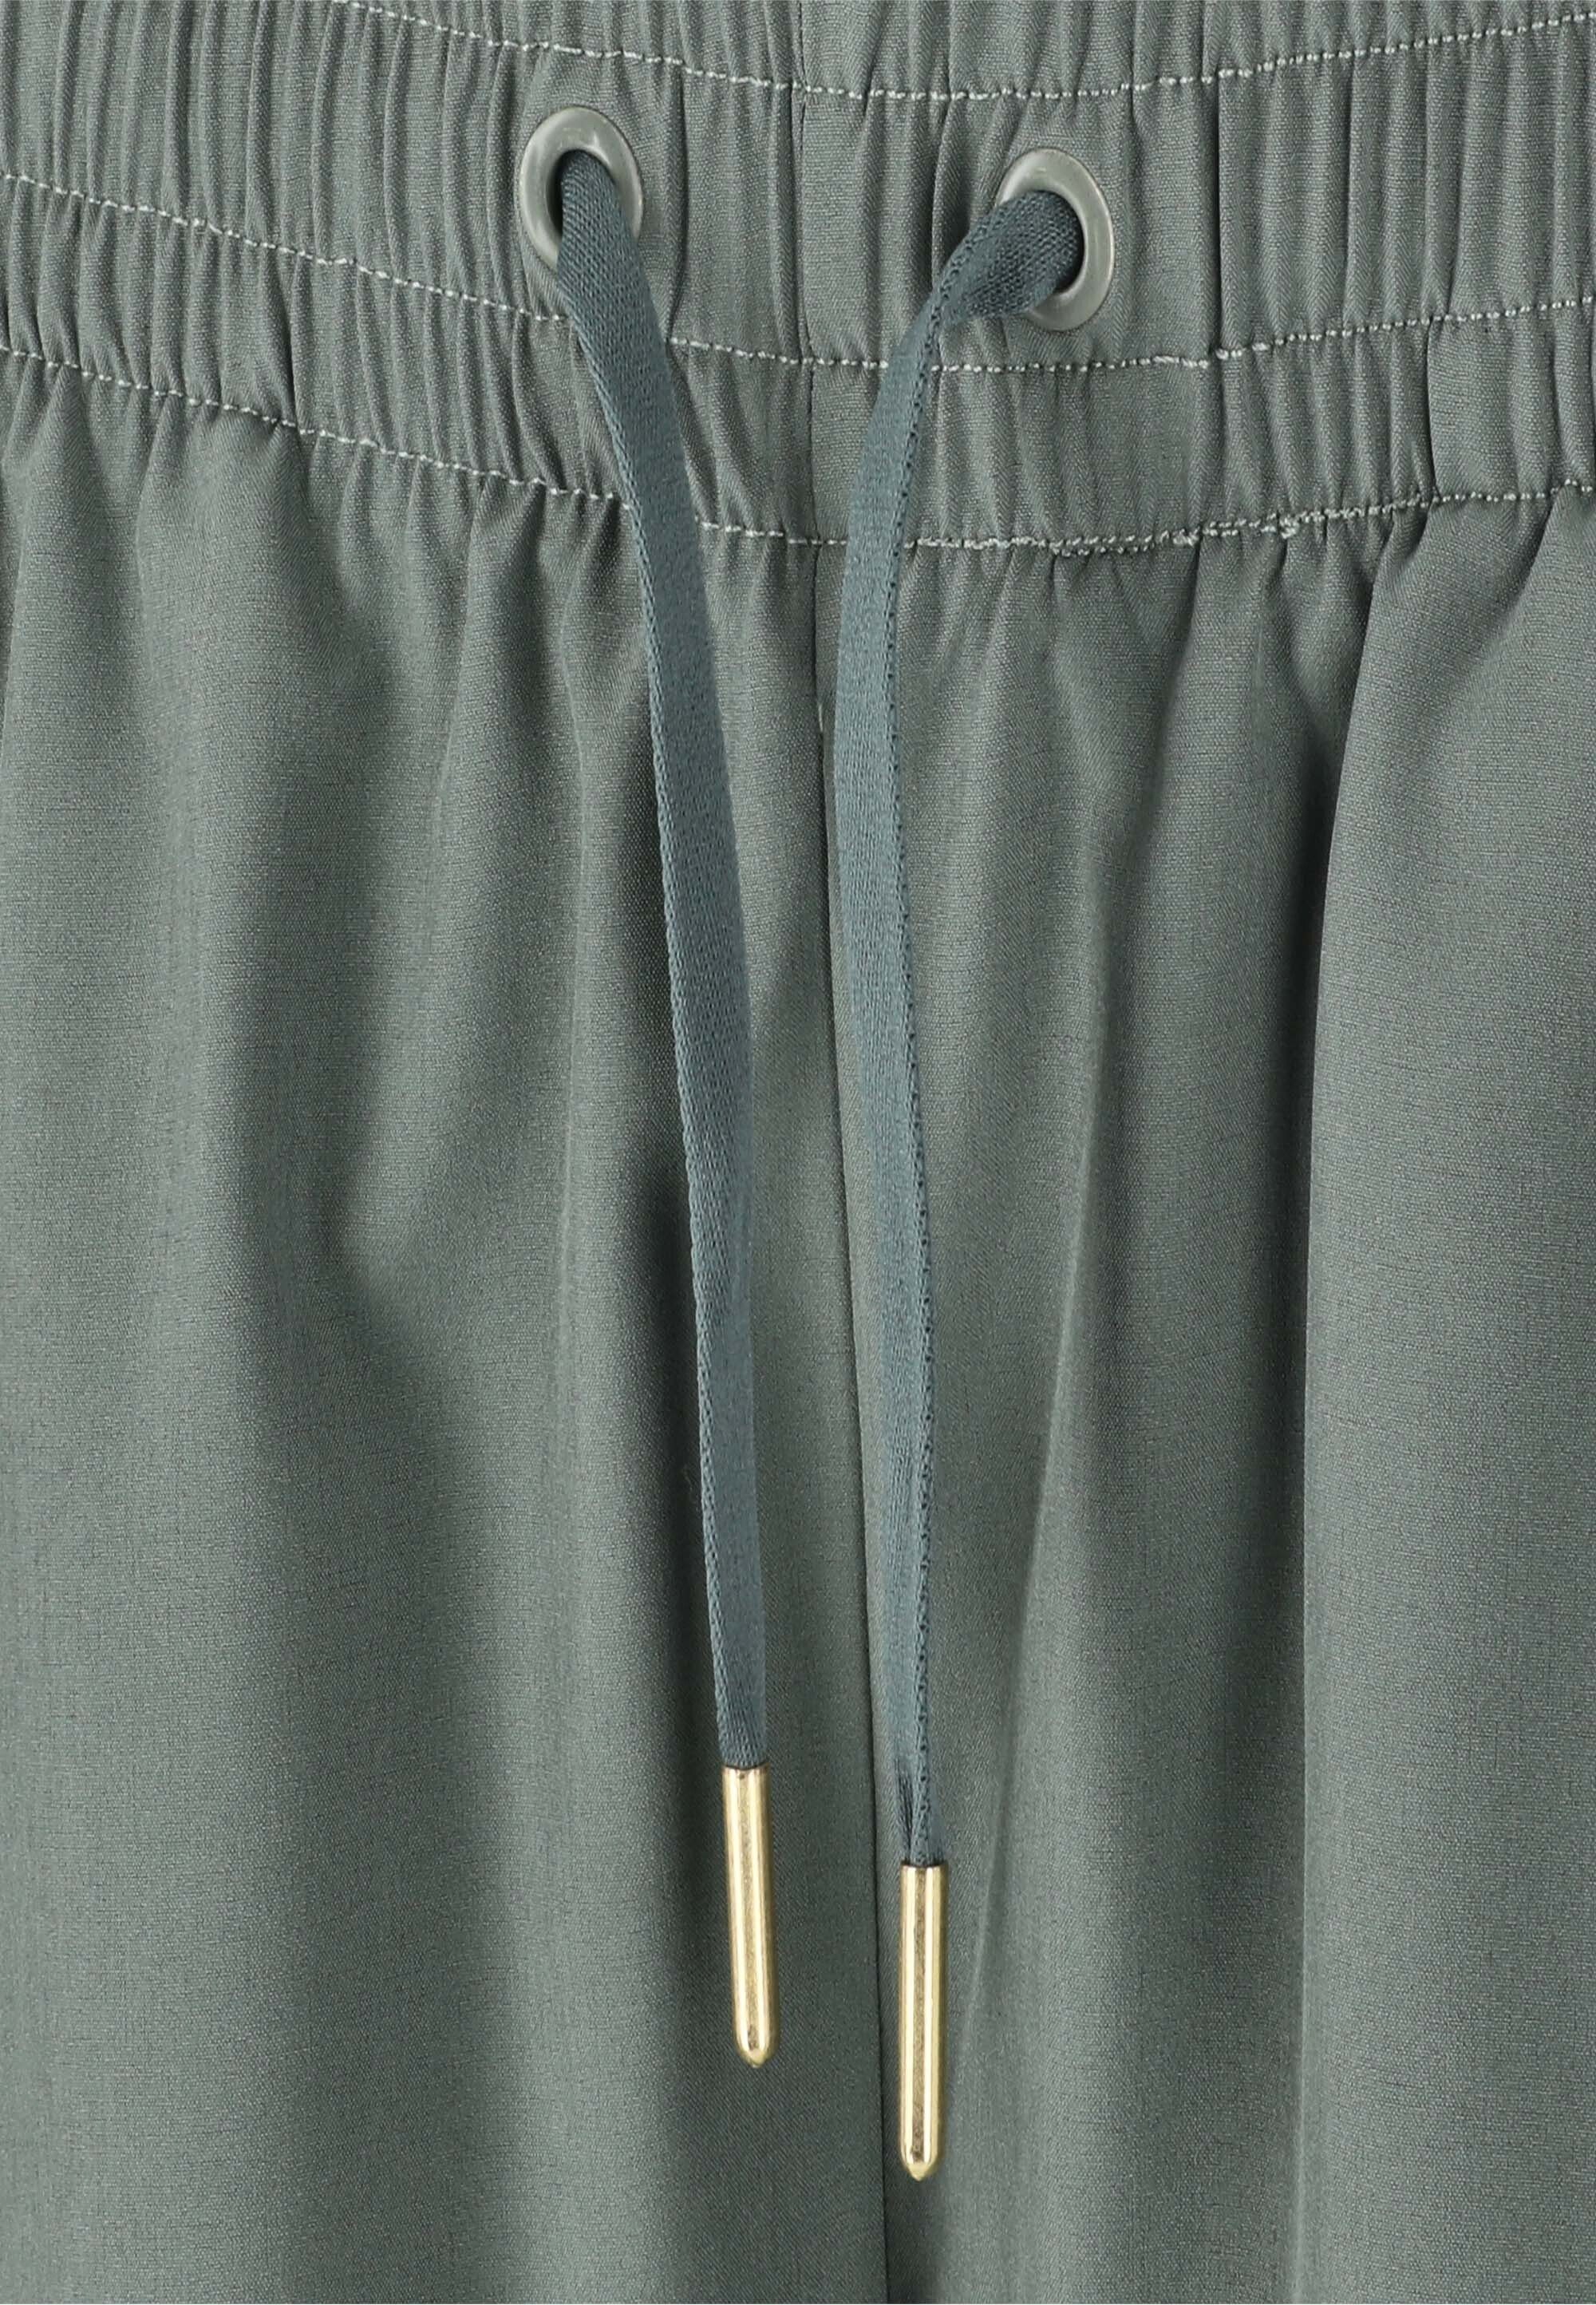 ENDURANCE Shorts Eslaire dunkelgrün praktischen mit Taschen